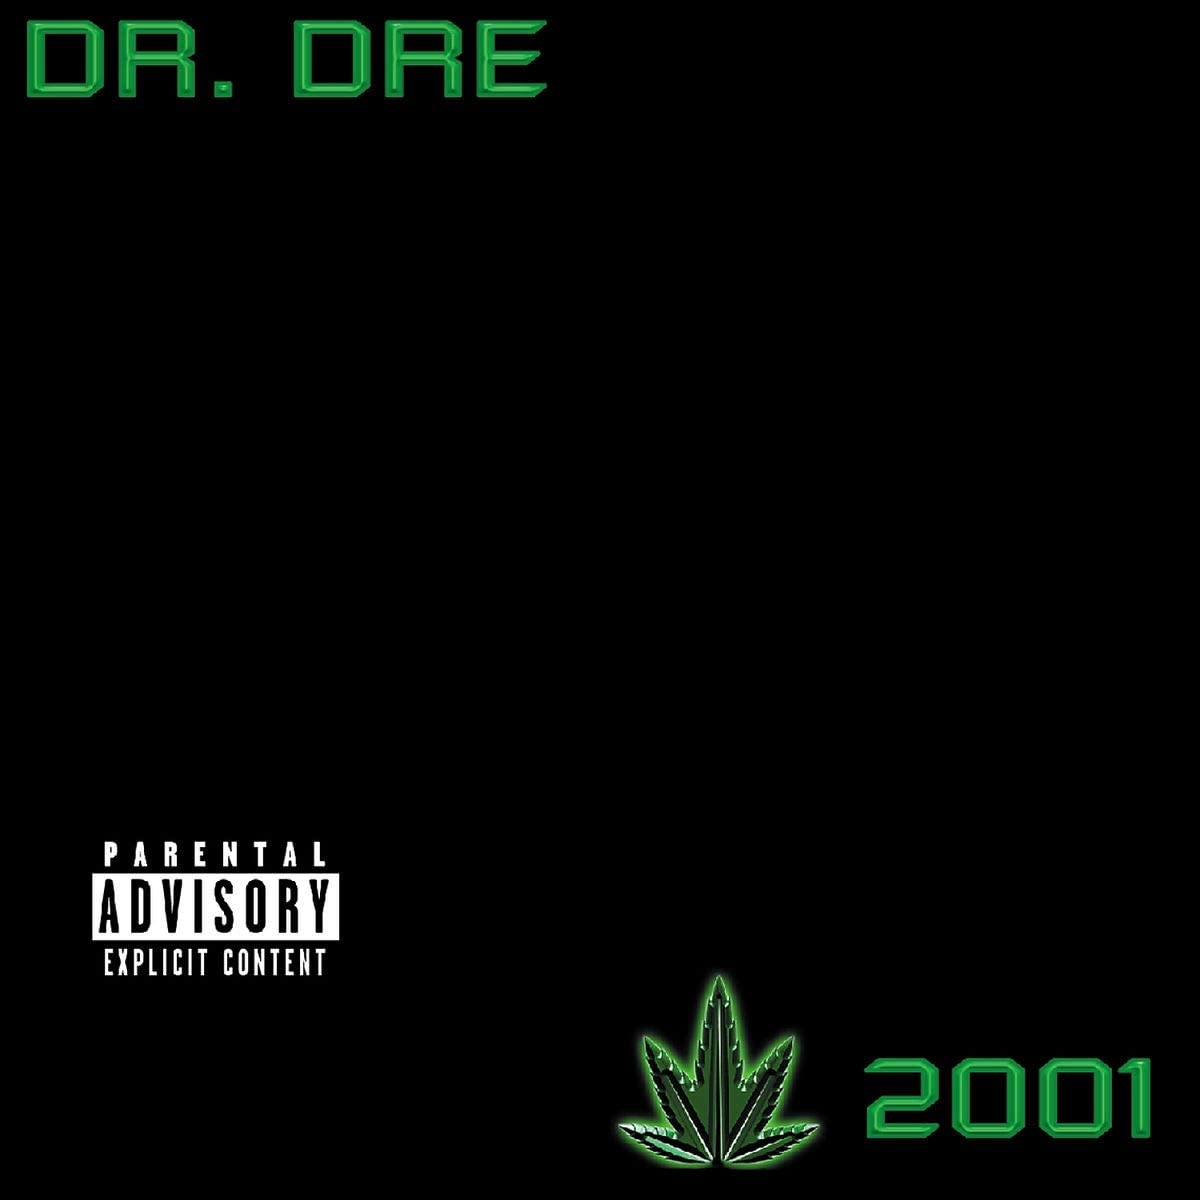 Dr. Dre/2001 [LP]